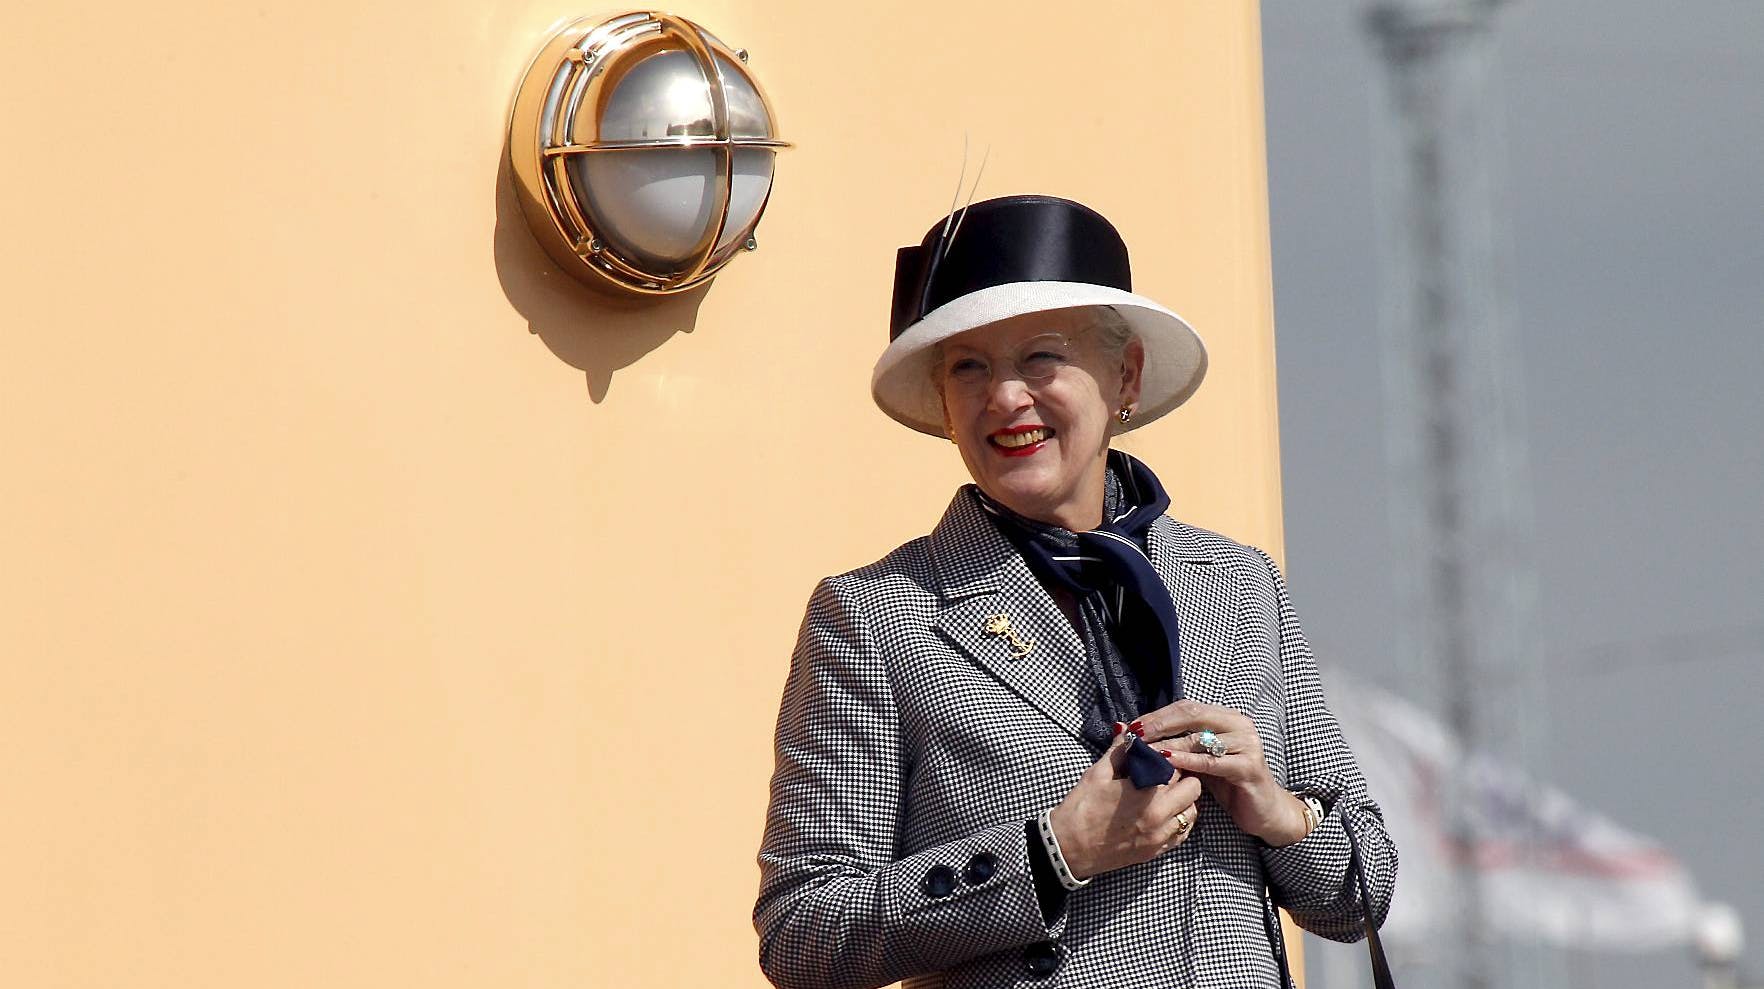 Dronning Margrethe ombord på kongeskibet Dannebrog ved en tidligere ankomst til Aarhus.